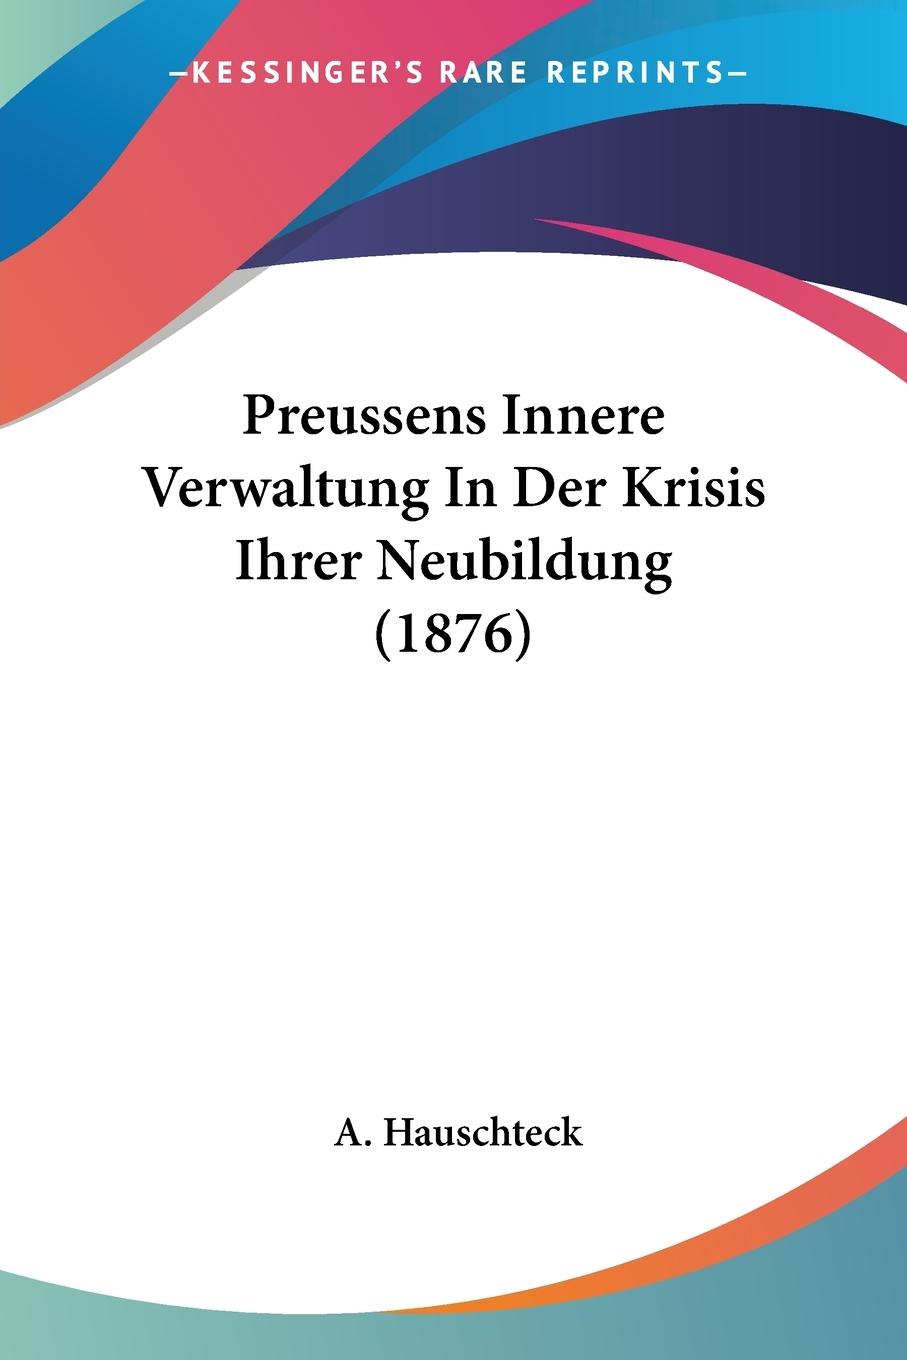 Preussens Innere Verwaltung In Der Krisis Ihrer Neubildung (1876) - Hauschteck, A.